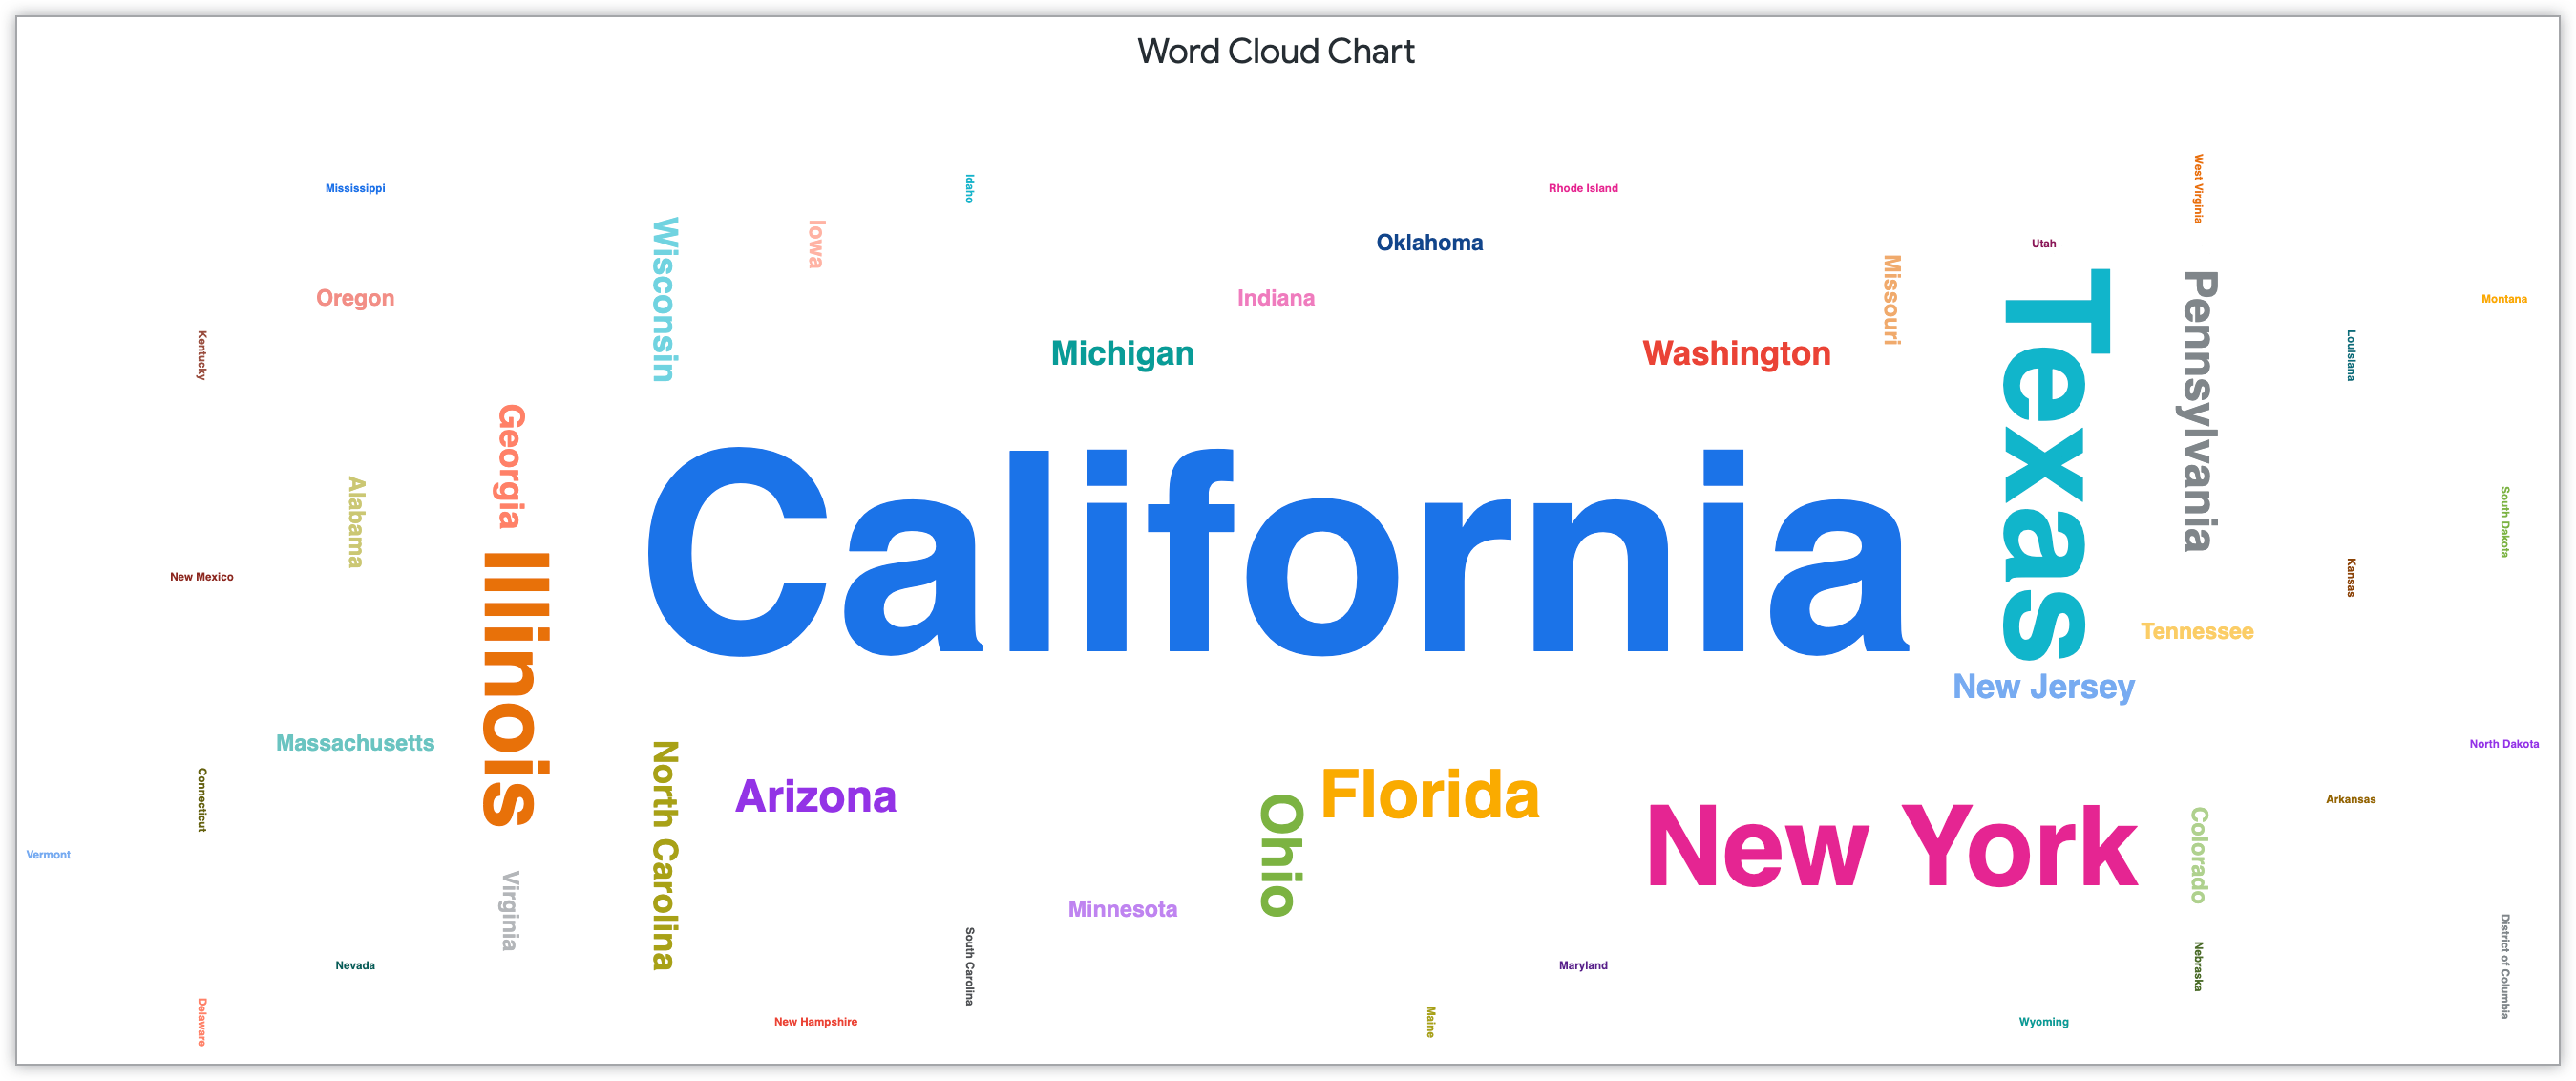 해당 주의 고객 수에 따라 크기가 지정된 주 이름을 보여주는 Word Cloud 차트